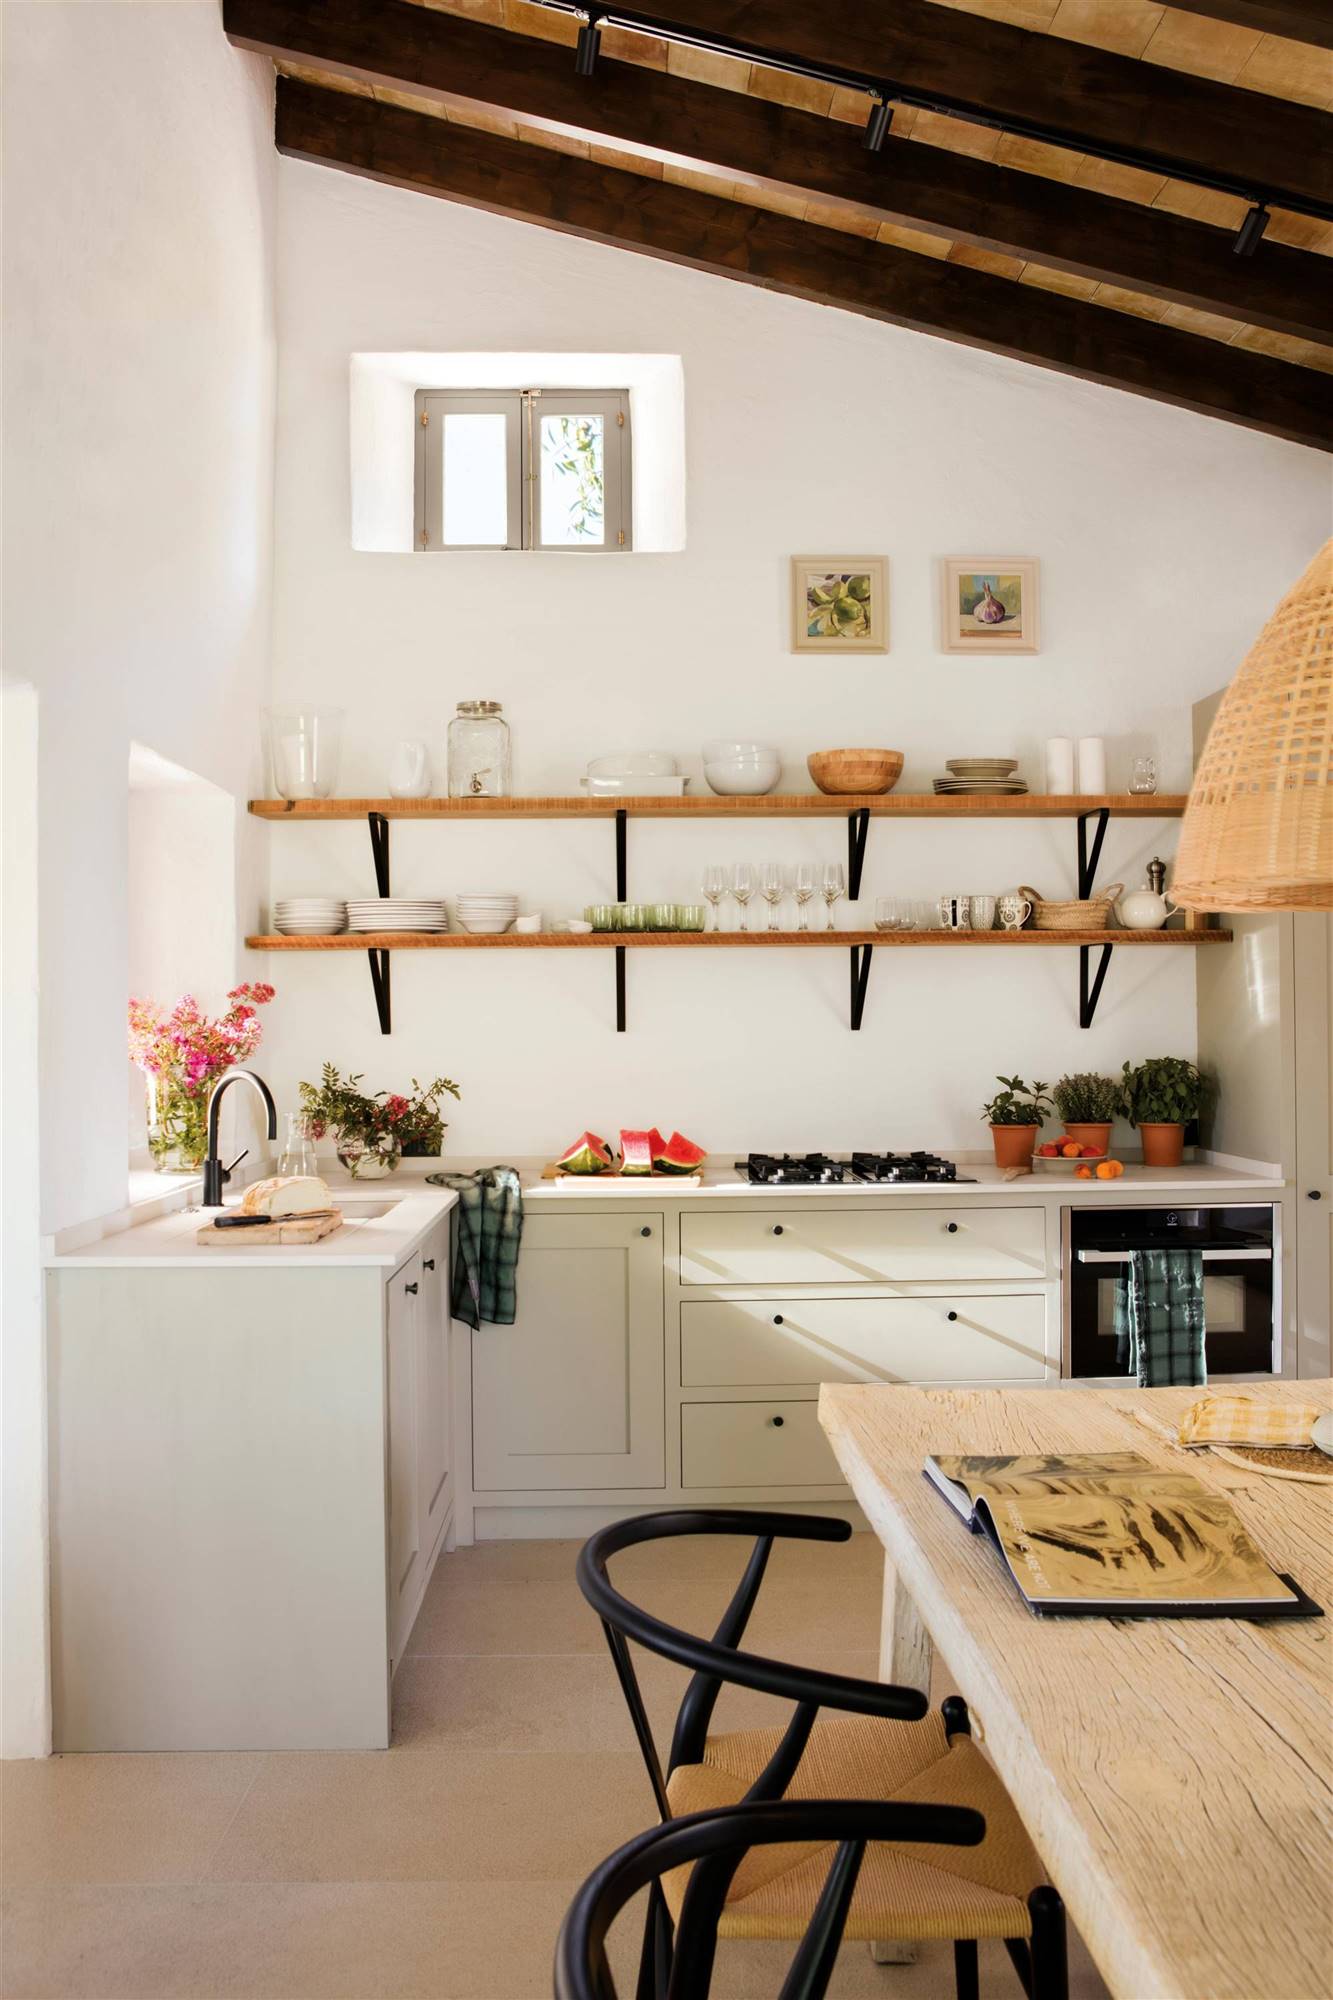 Cocina rústica moderna con muebles bajos blancos y estantes de madera.